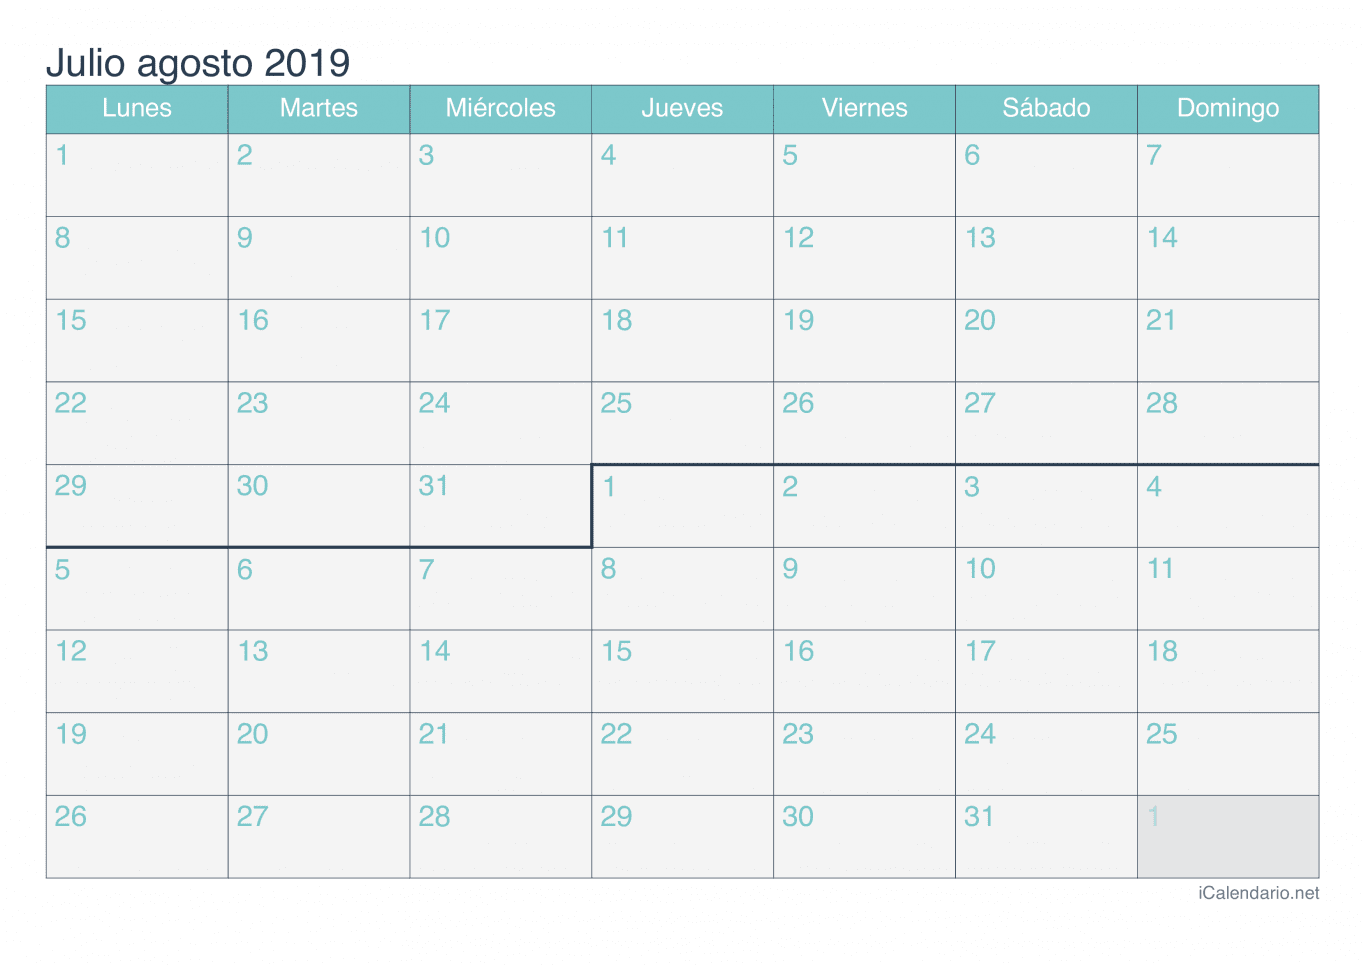 Calendario de julio agosto 2019 - Turquesa